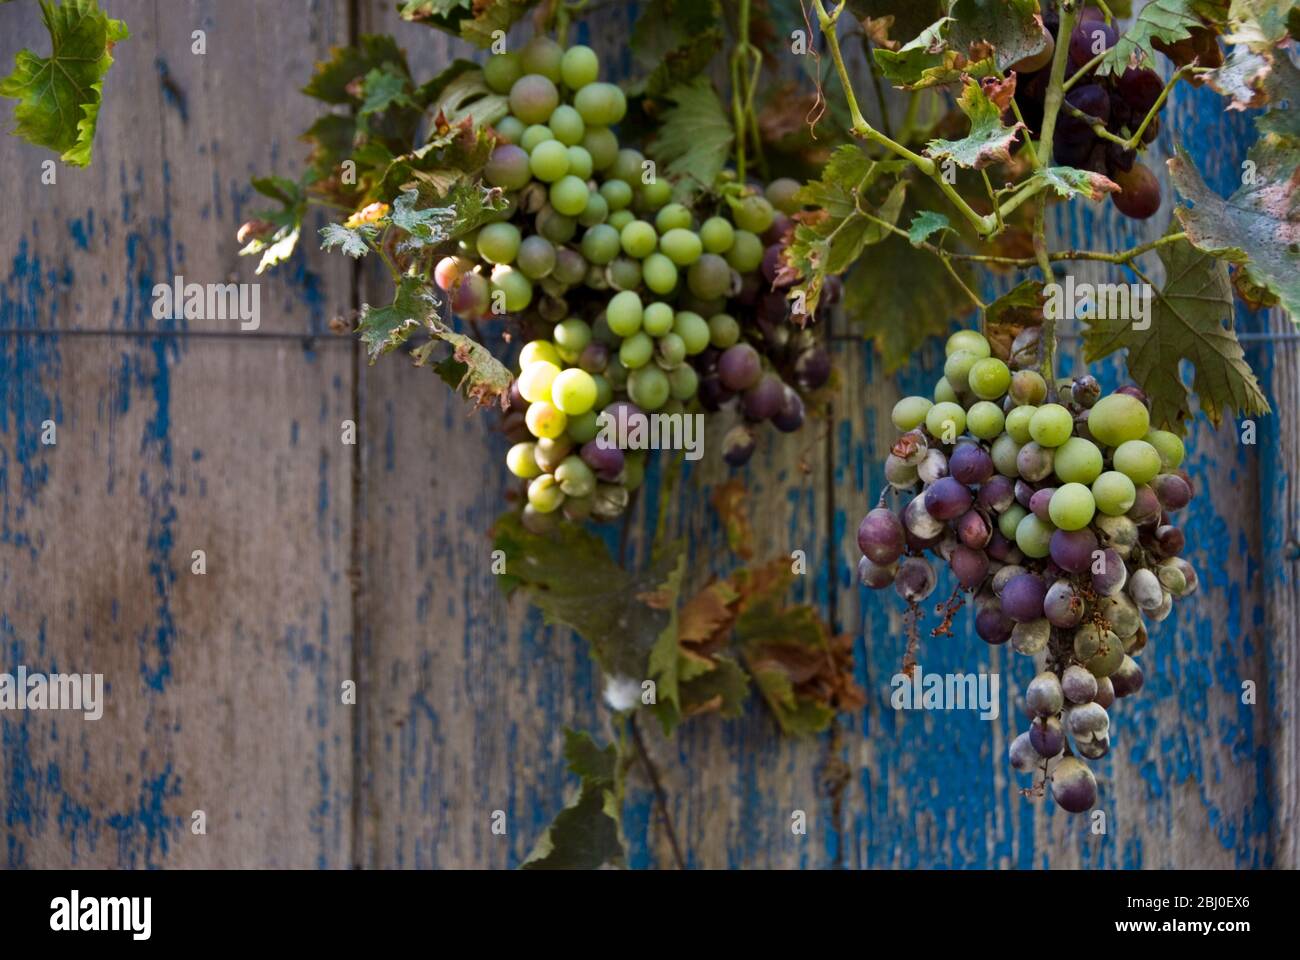 Reifung Trauben hängen vor der alten Tür in Zypern - Stockfoto